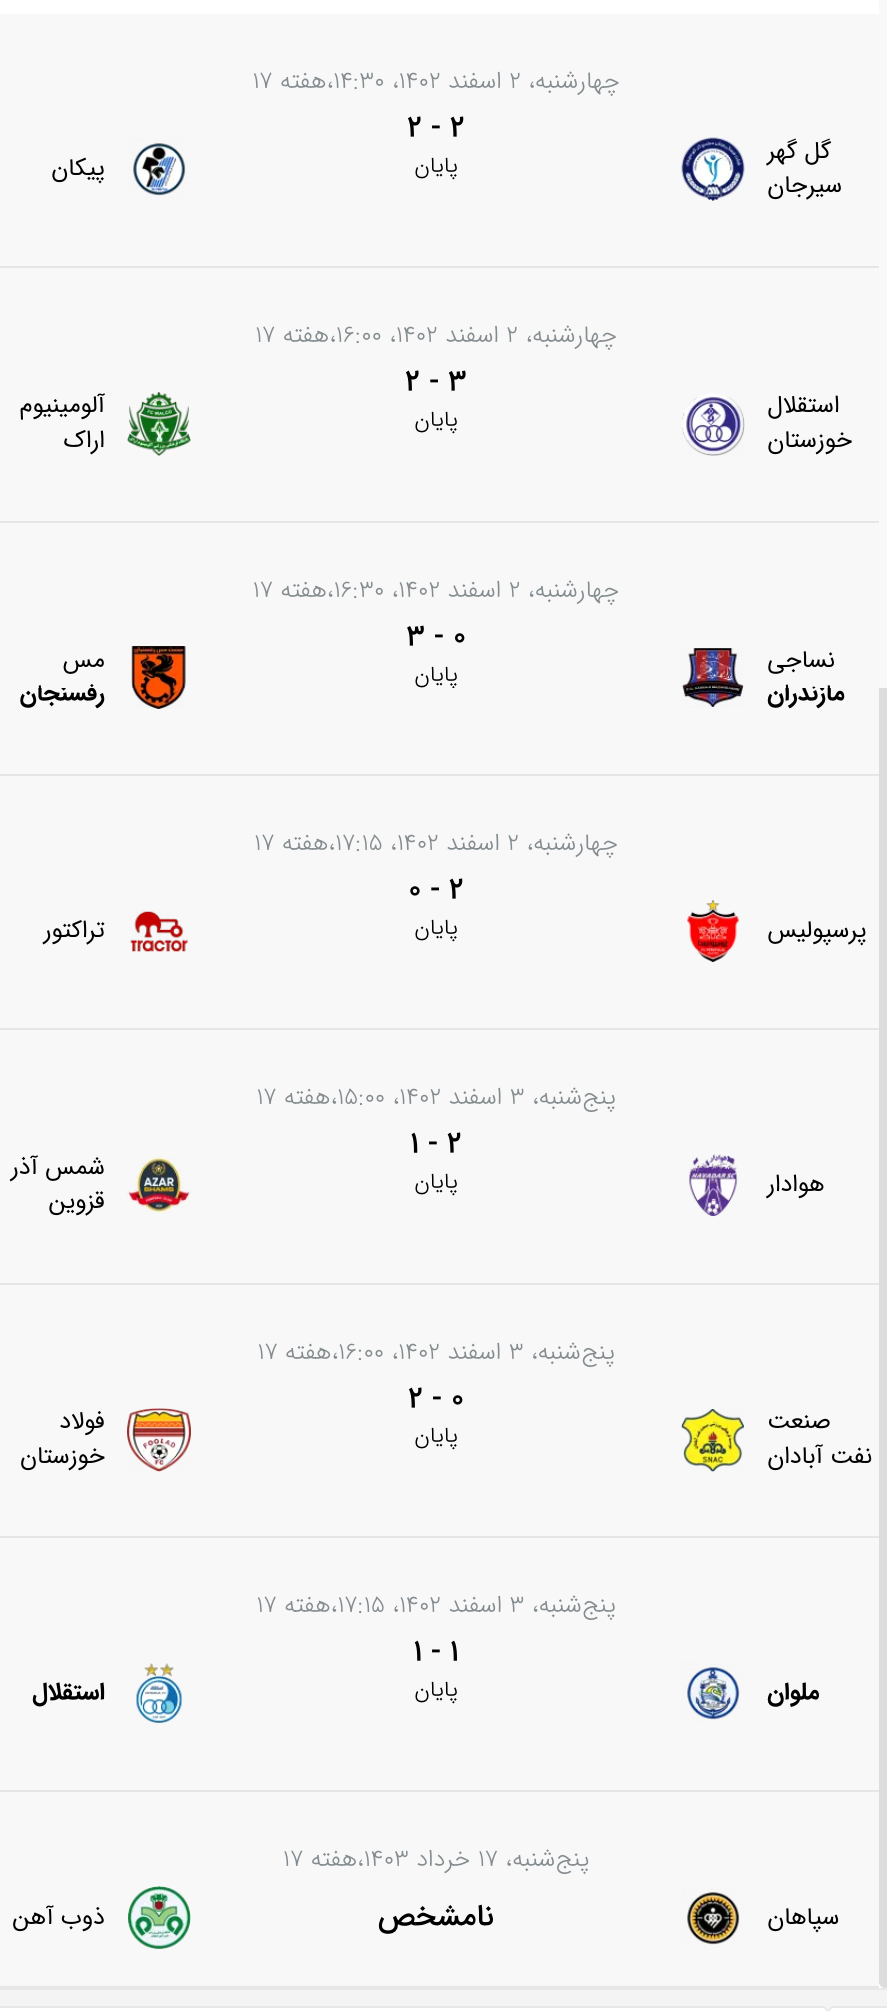 نتایج بازیهای لیگ برتر ایران - هفته هفدهم بازی ها